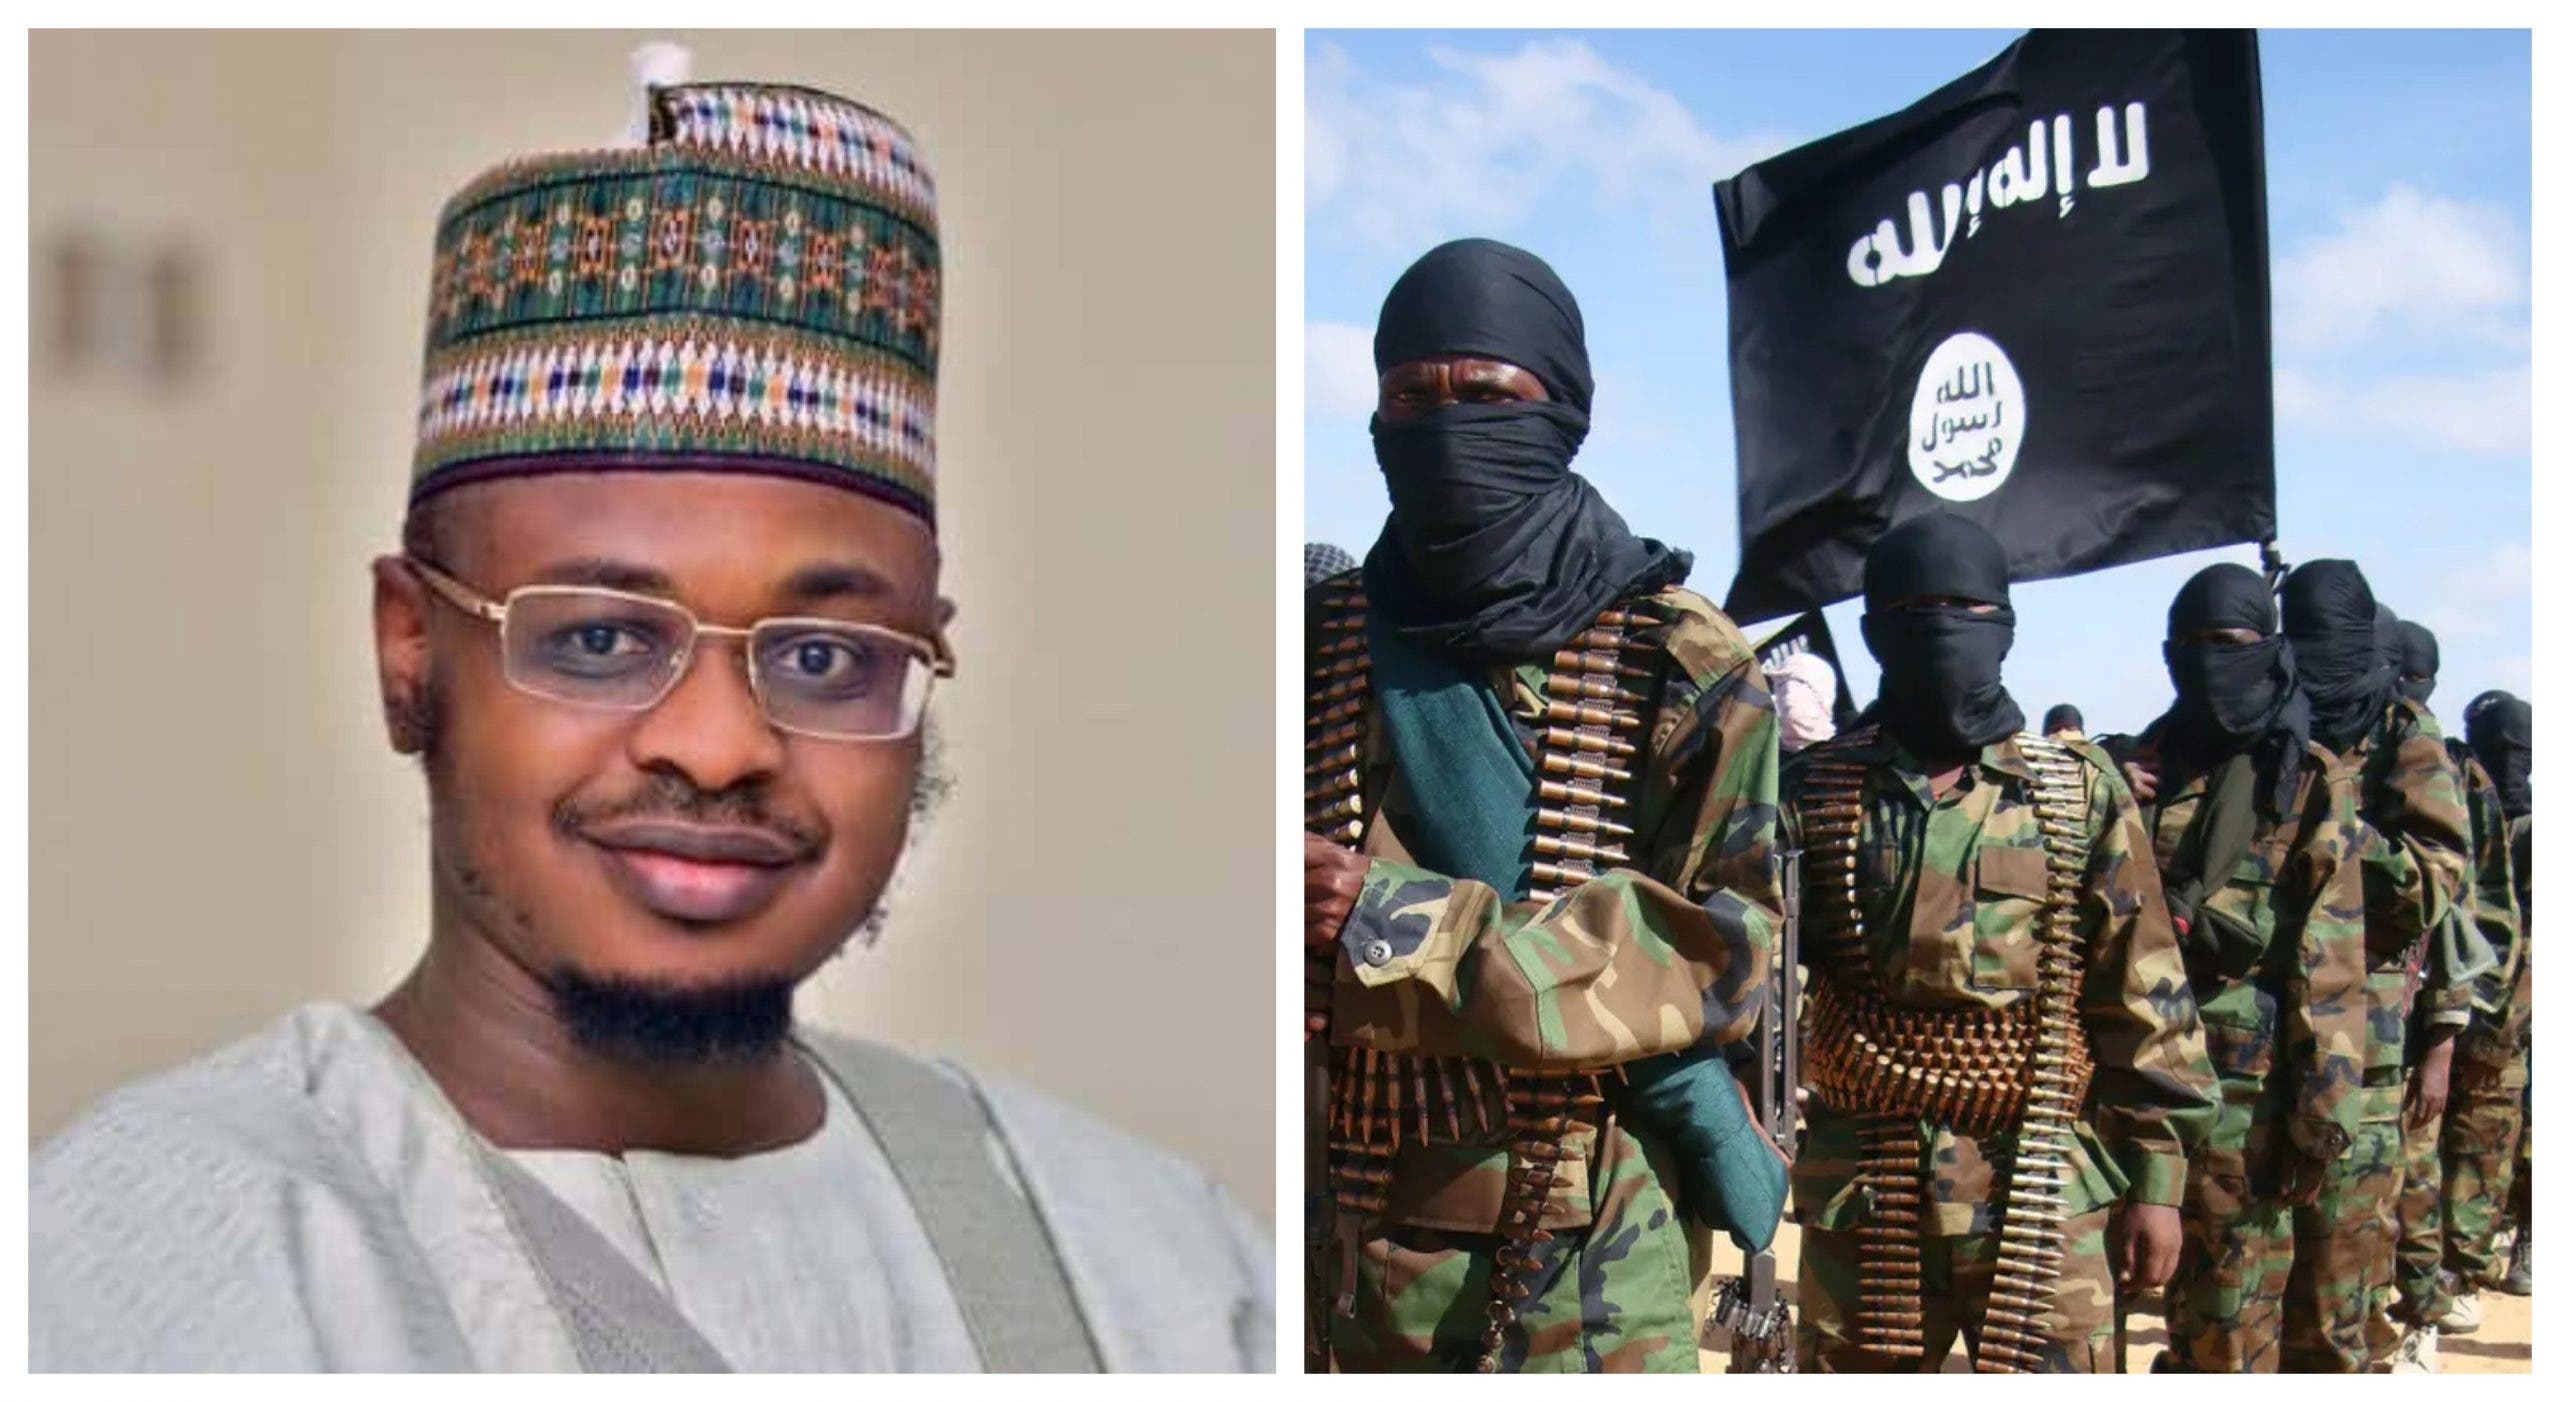 Pantami #PantamiResign Taliban Al-Qaeda Osama bin Laden terrorism insecurity Boko Haram Nigeria Communications Minister Buhari